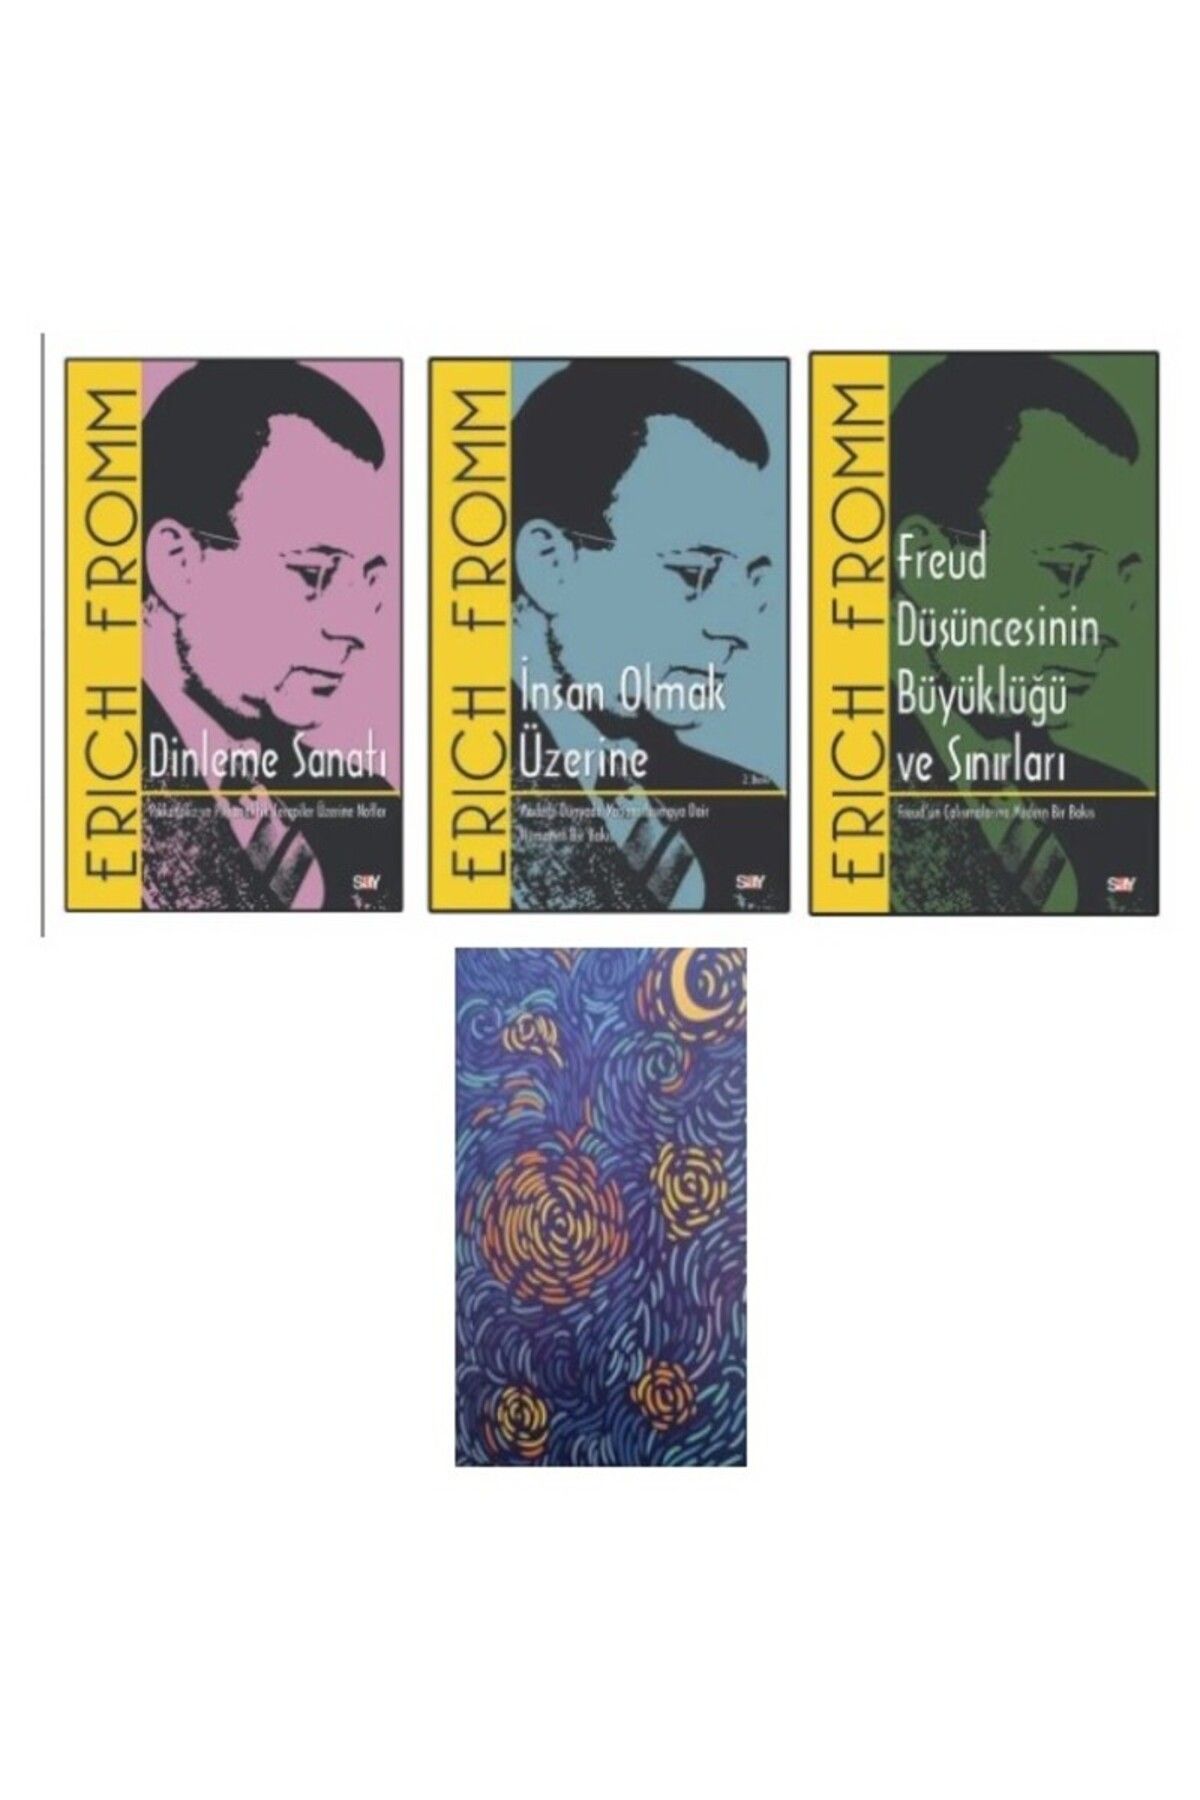 Say Yayınları Erich Fromm - Dinleme Sanatı - Insan Olmak Üzerine - Freud Düşüncesinin Büyüklüğü -Defter HEDİYE